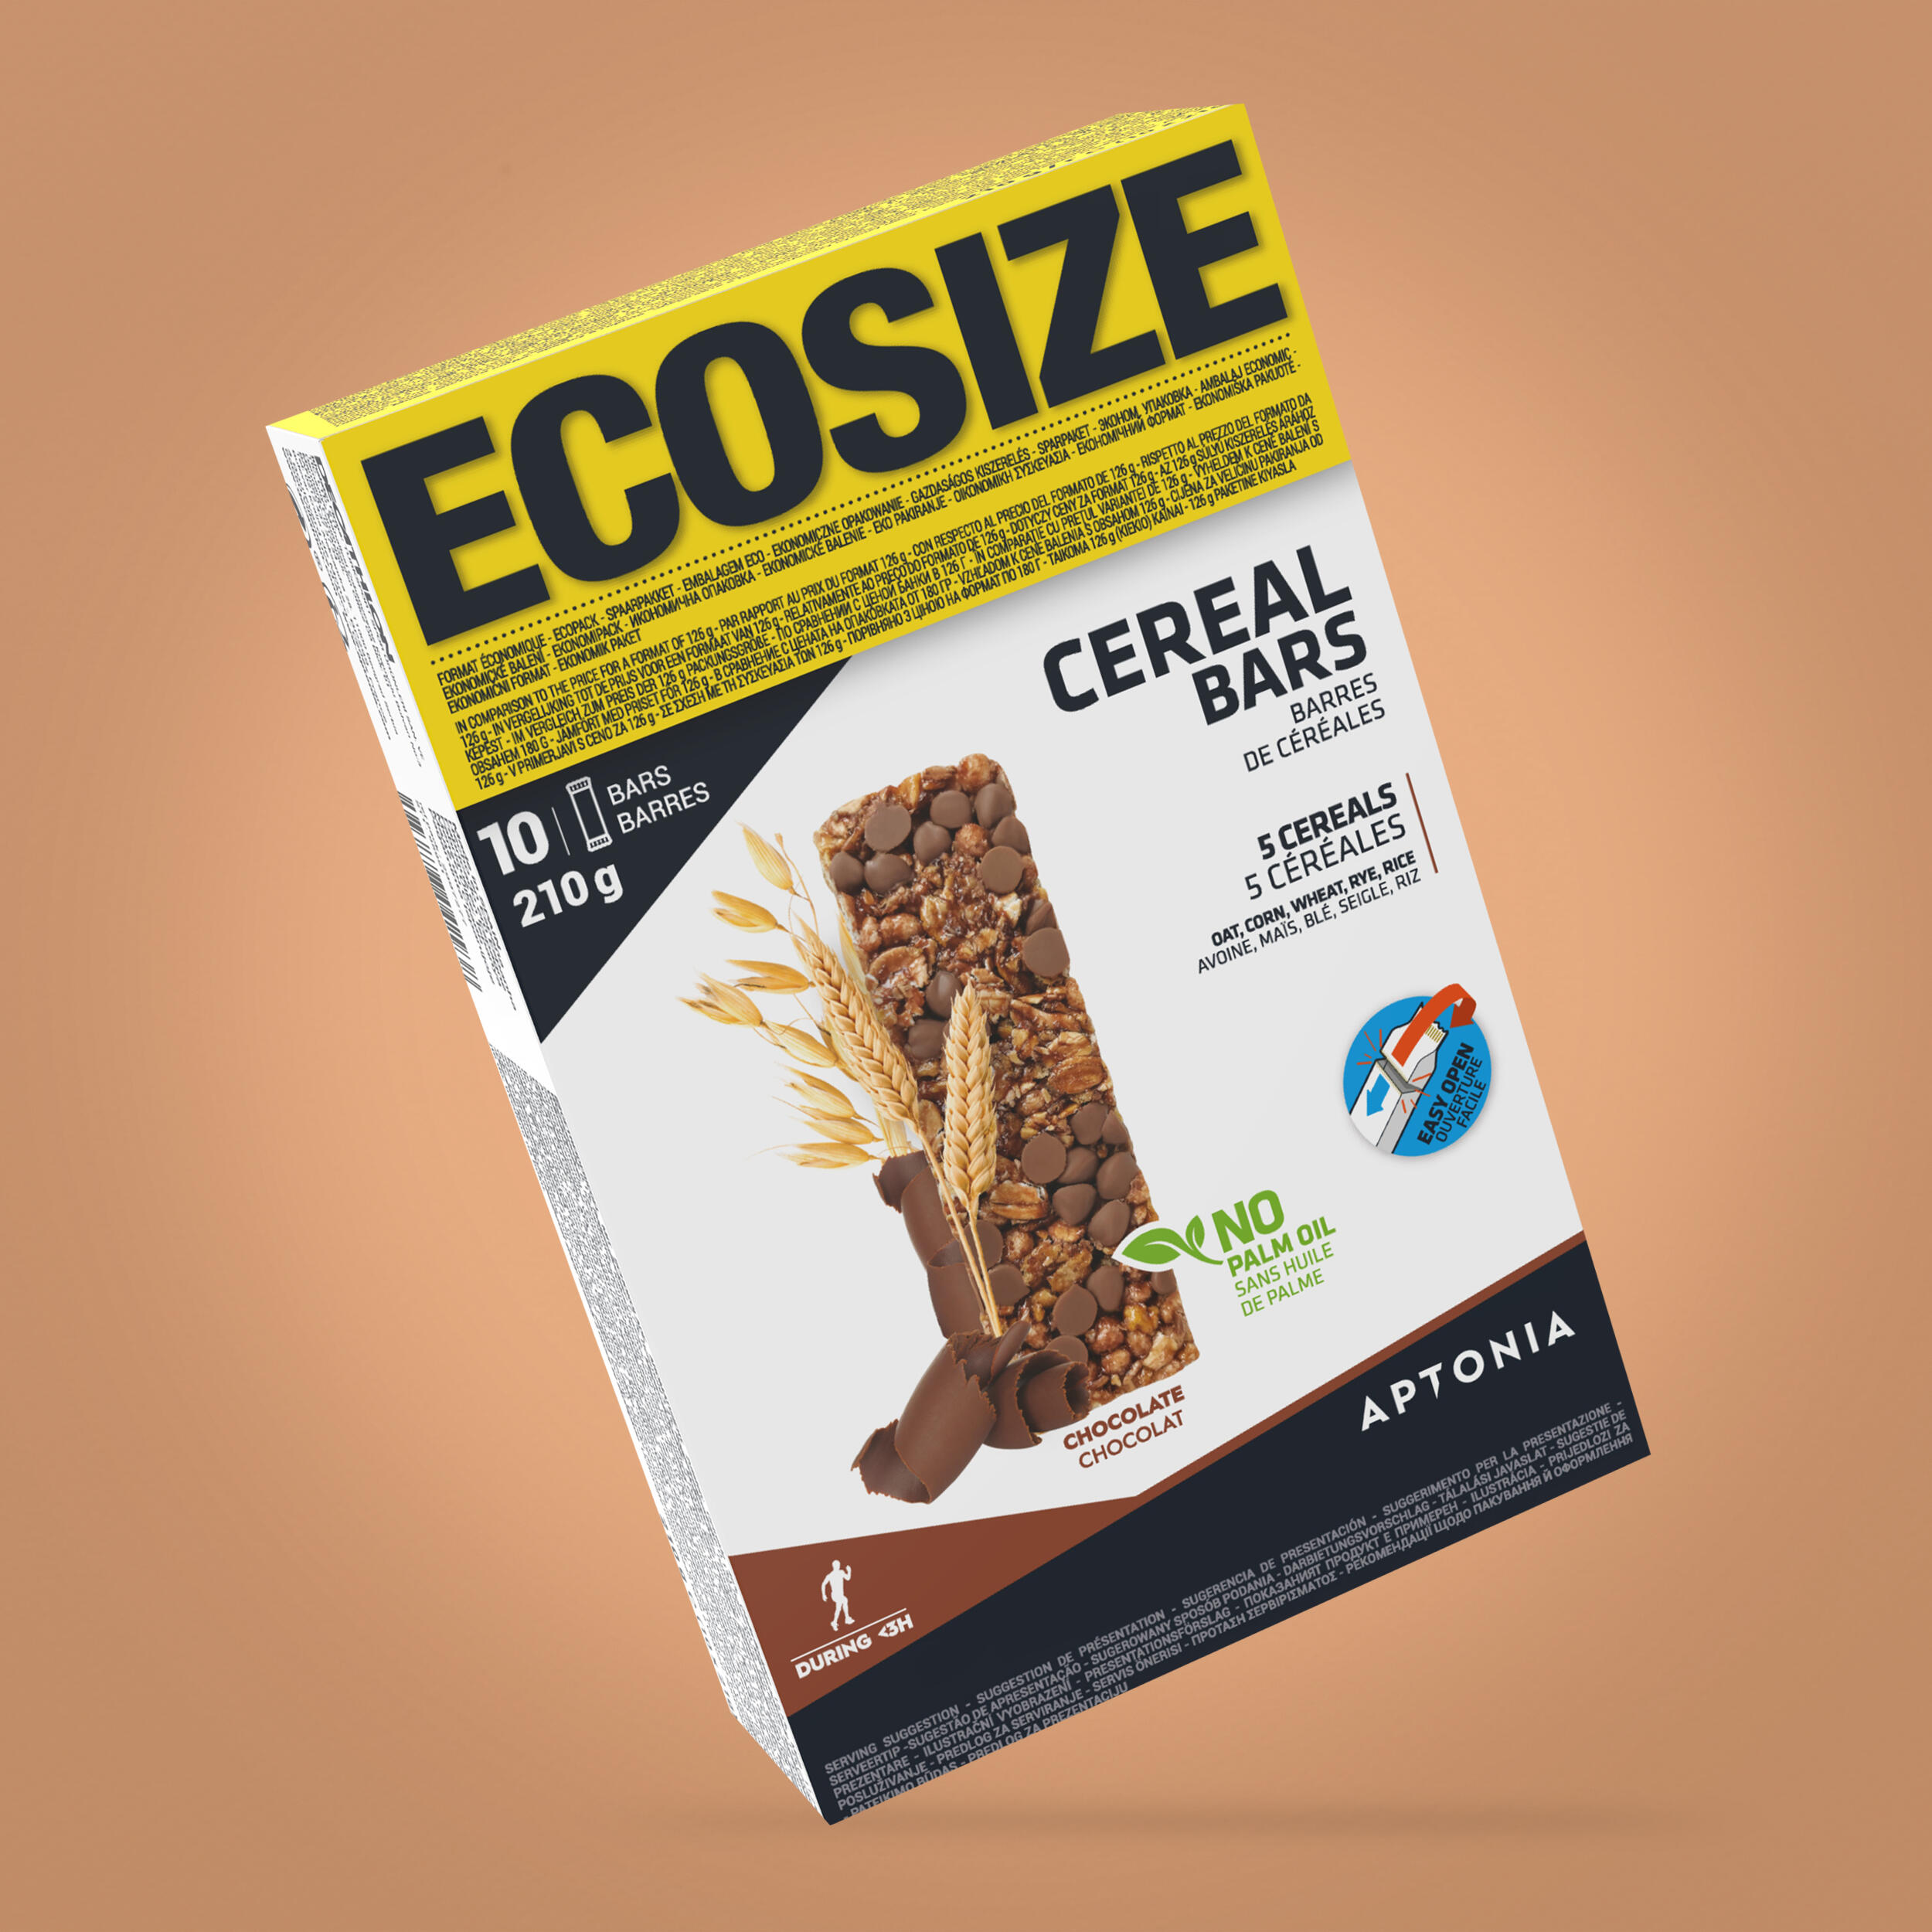 Baton cereale ciocolată Ecosize Clak 10x21g La Oferta Online APTONIA imagine La Oferta Online